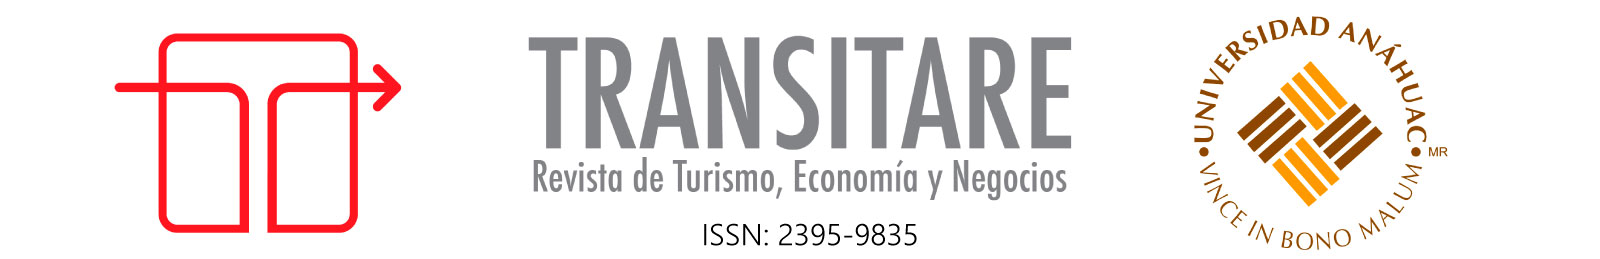 Transitare, Revista de Turismo, Economía y Negocios